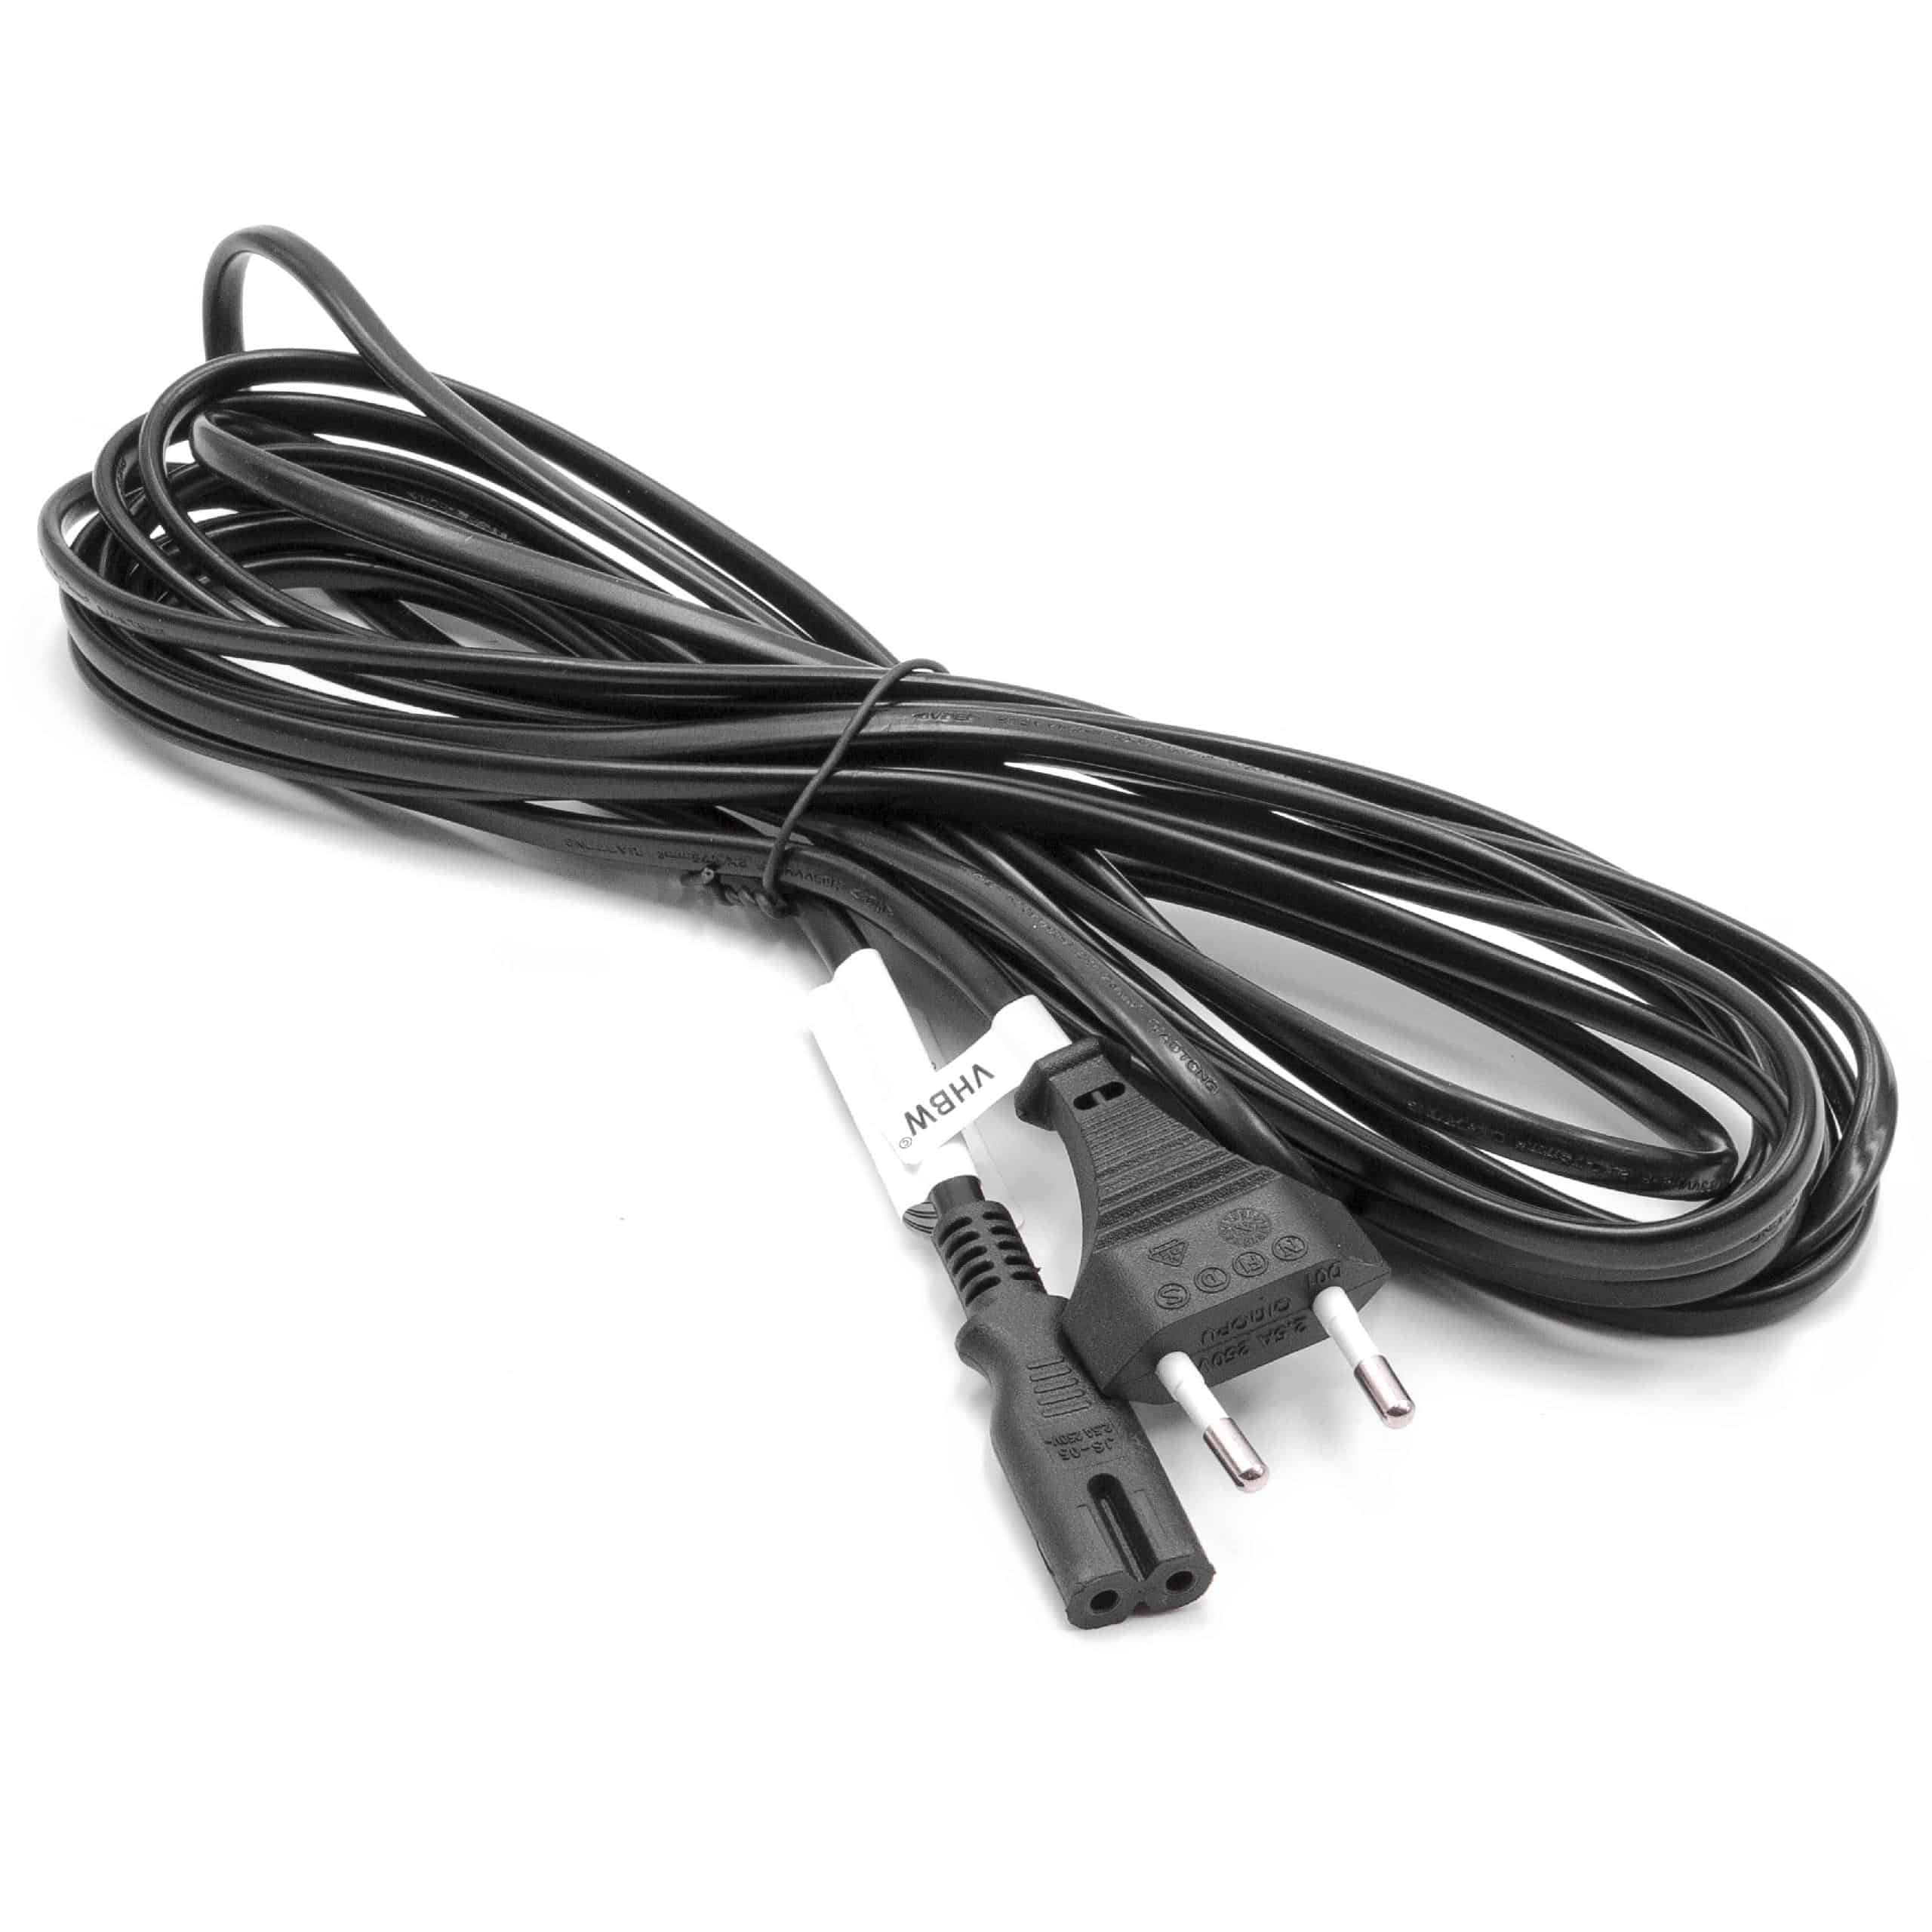 Cable de red C7 euroconector compatible con dispositivo IEC por ej. PC, monitor, ordenador - 5 m